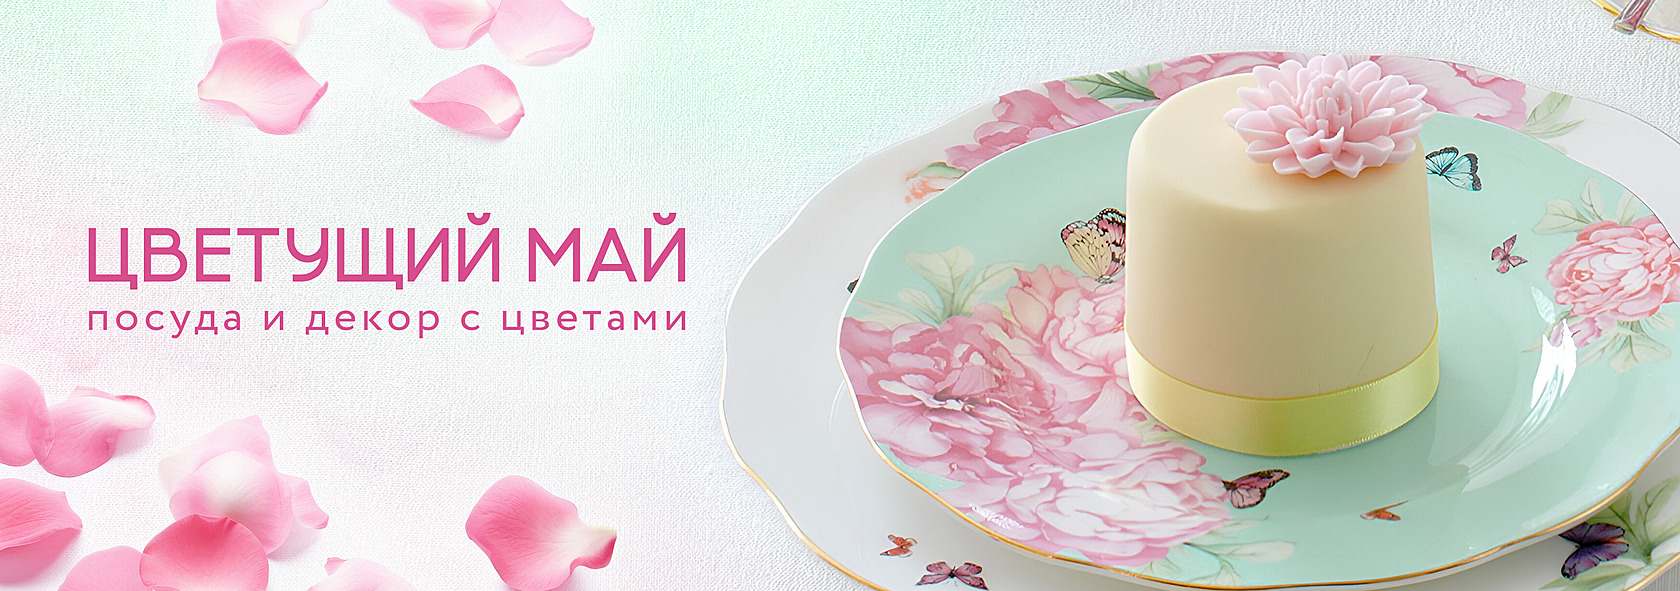 магазин элитной посуды и текстиля для дома в России